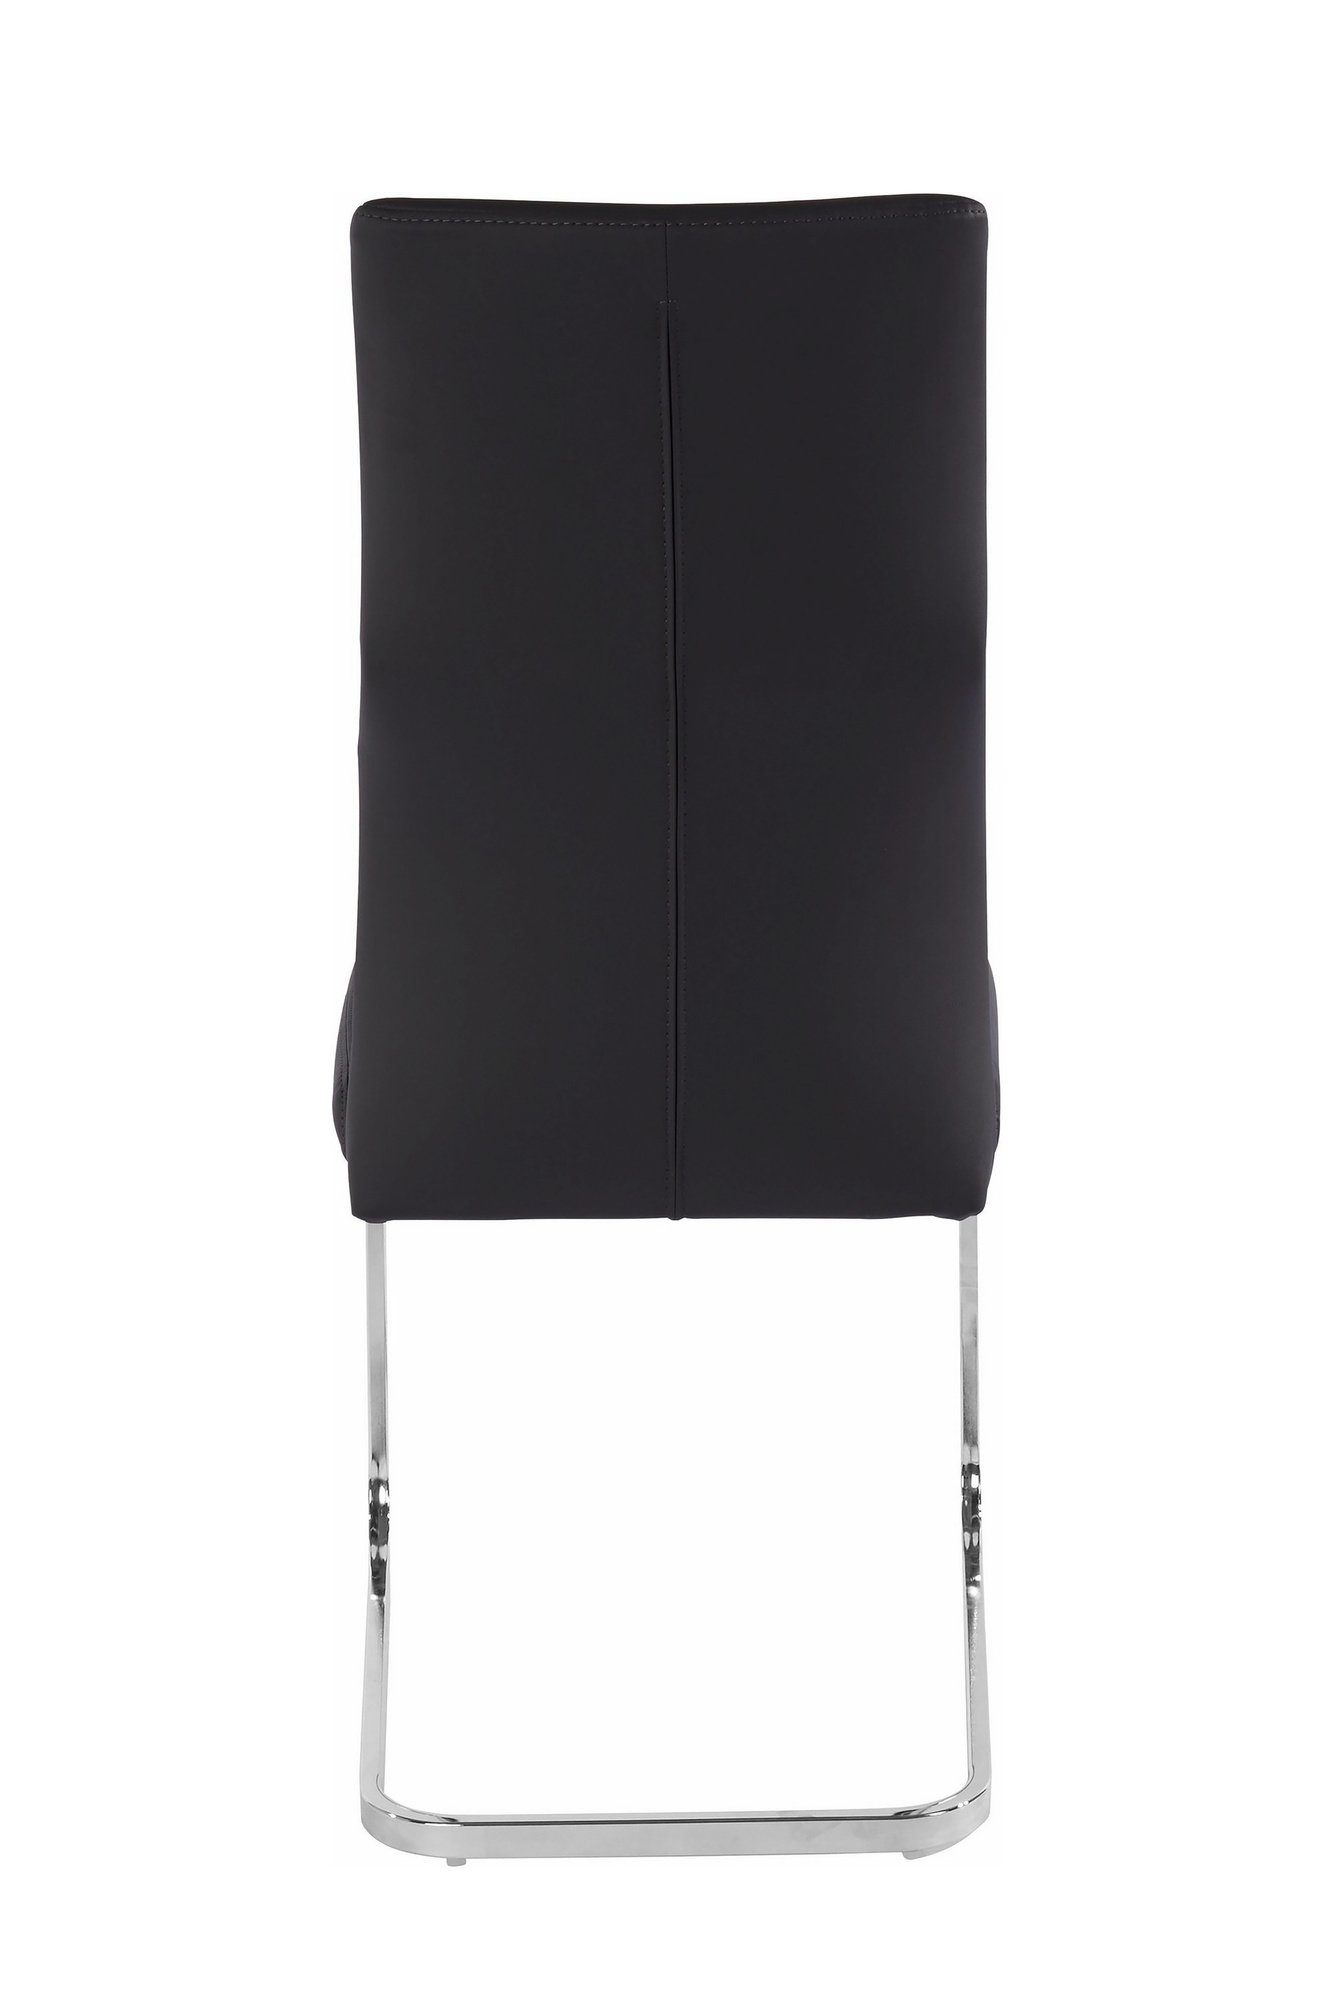 Danny mit gemütlicher grau In (2er-Set), oder Kunstlederbezug, byLIVING Esszimmerstuhl Freischwinger schwarz